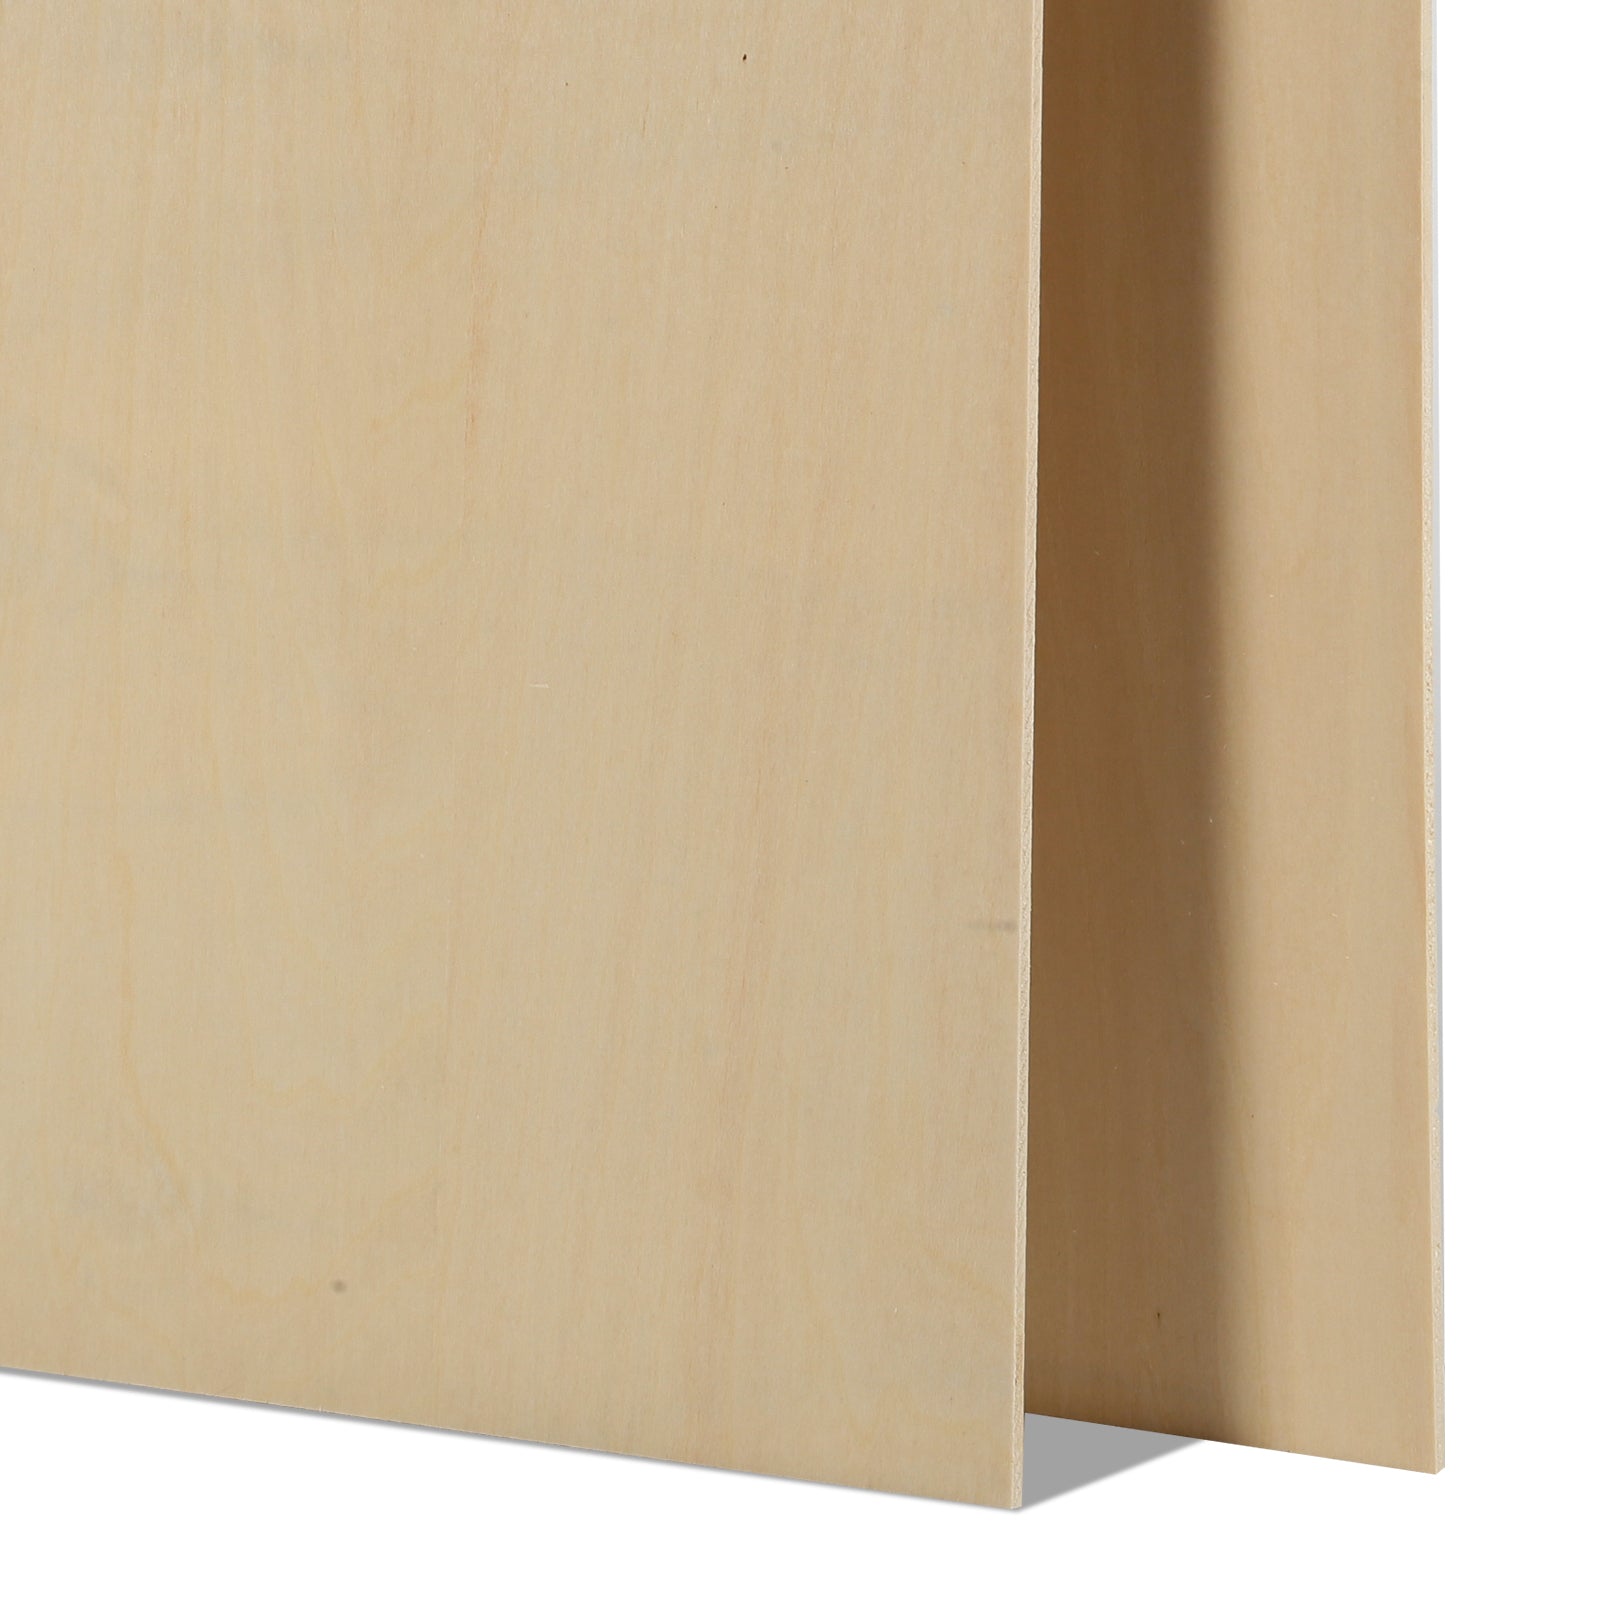 20 Stück A4-Sperrholzplatten, 3 mm Dicke (+/- 0,2 mm), Lindenholz-Sperrholz, 21 x 29,7 x 0,3 cm, zum Gravieren